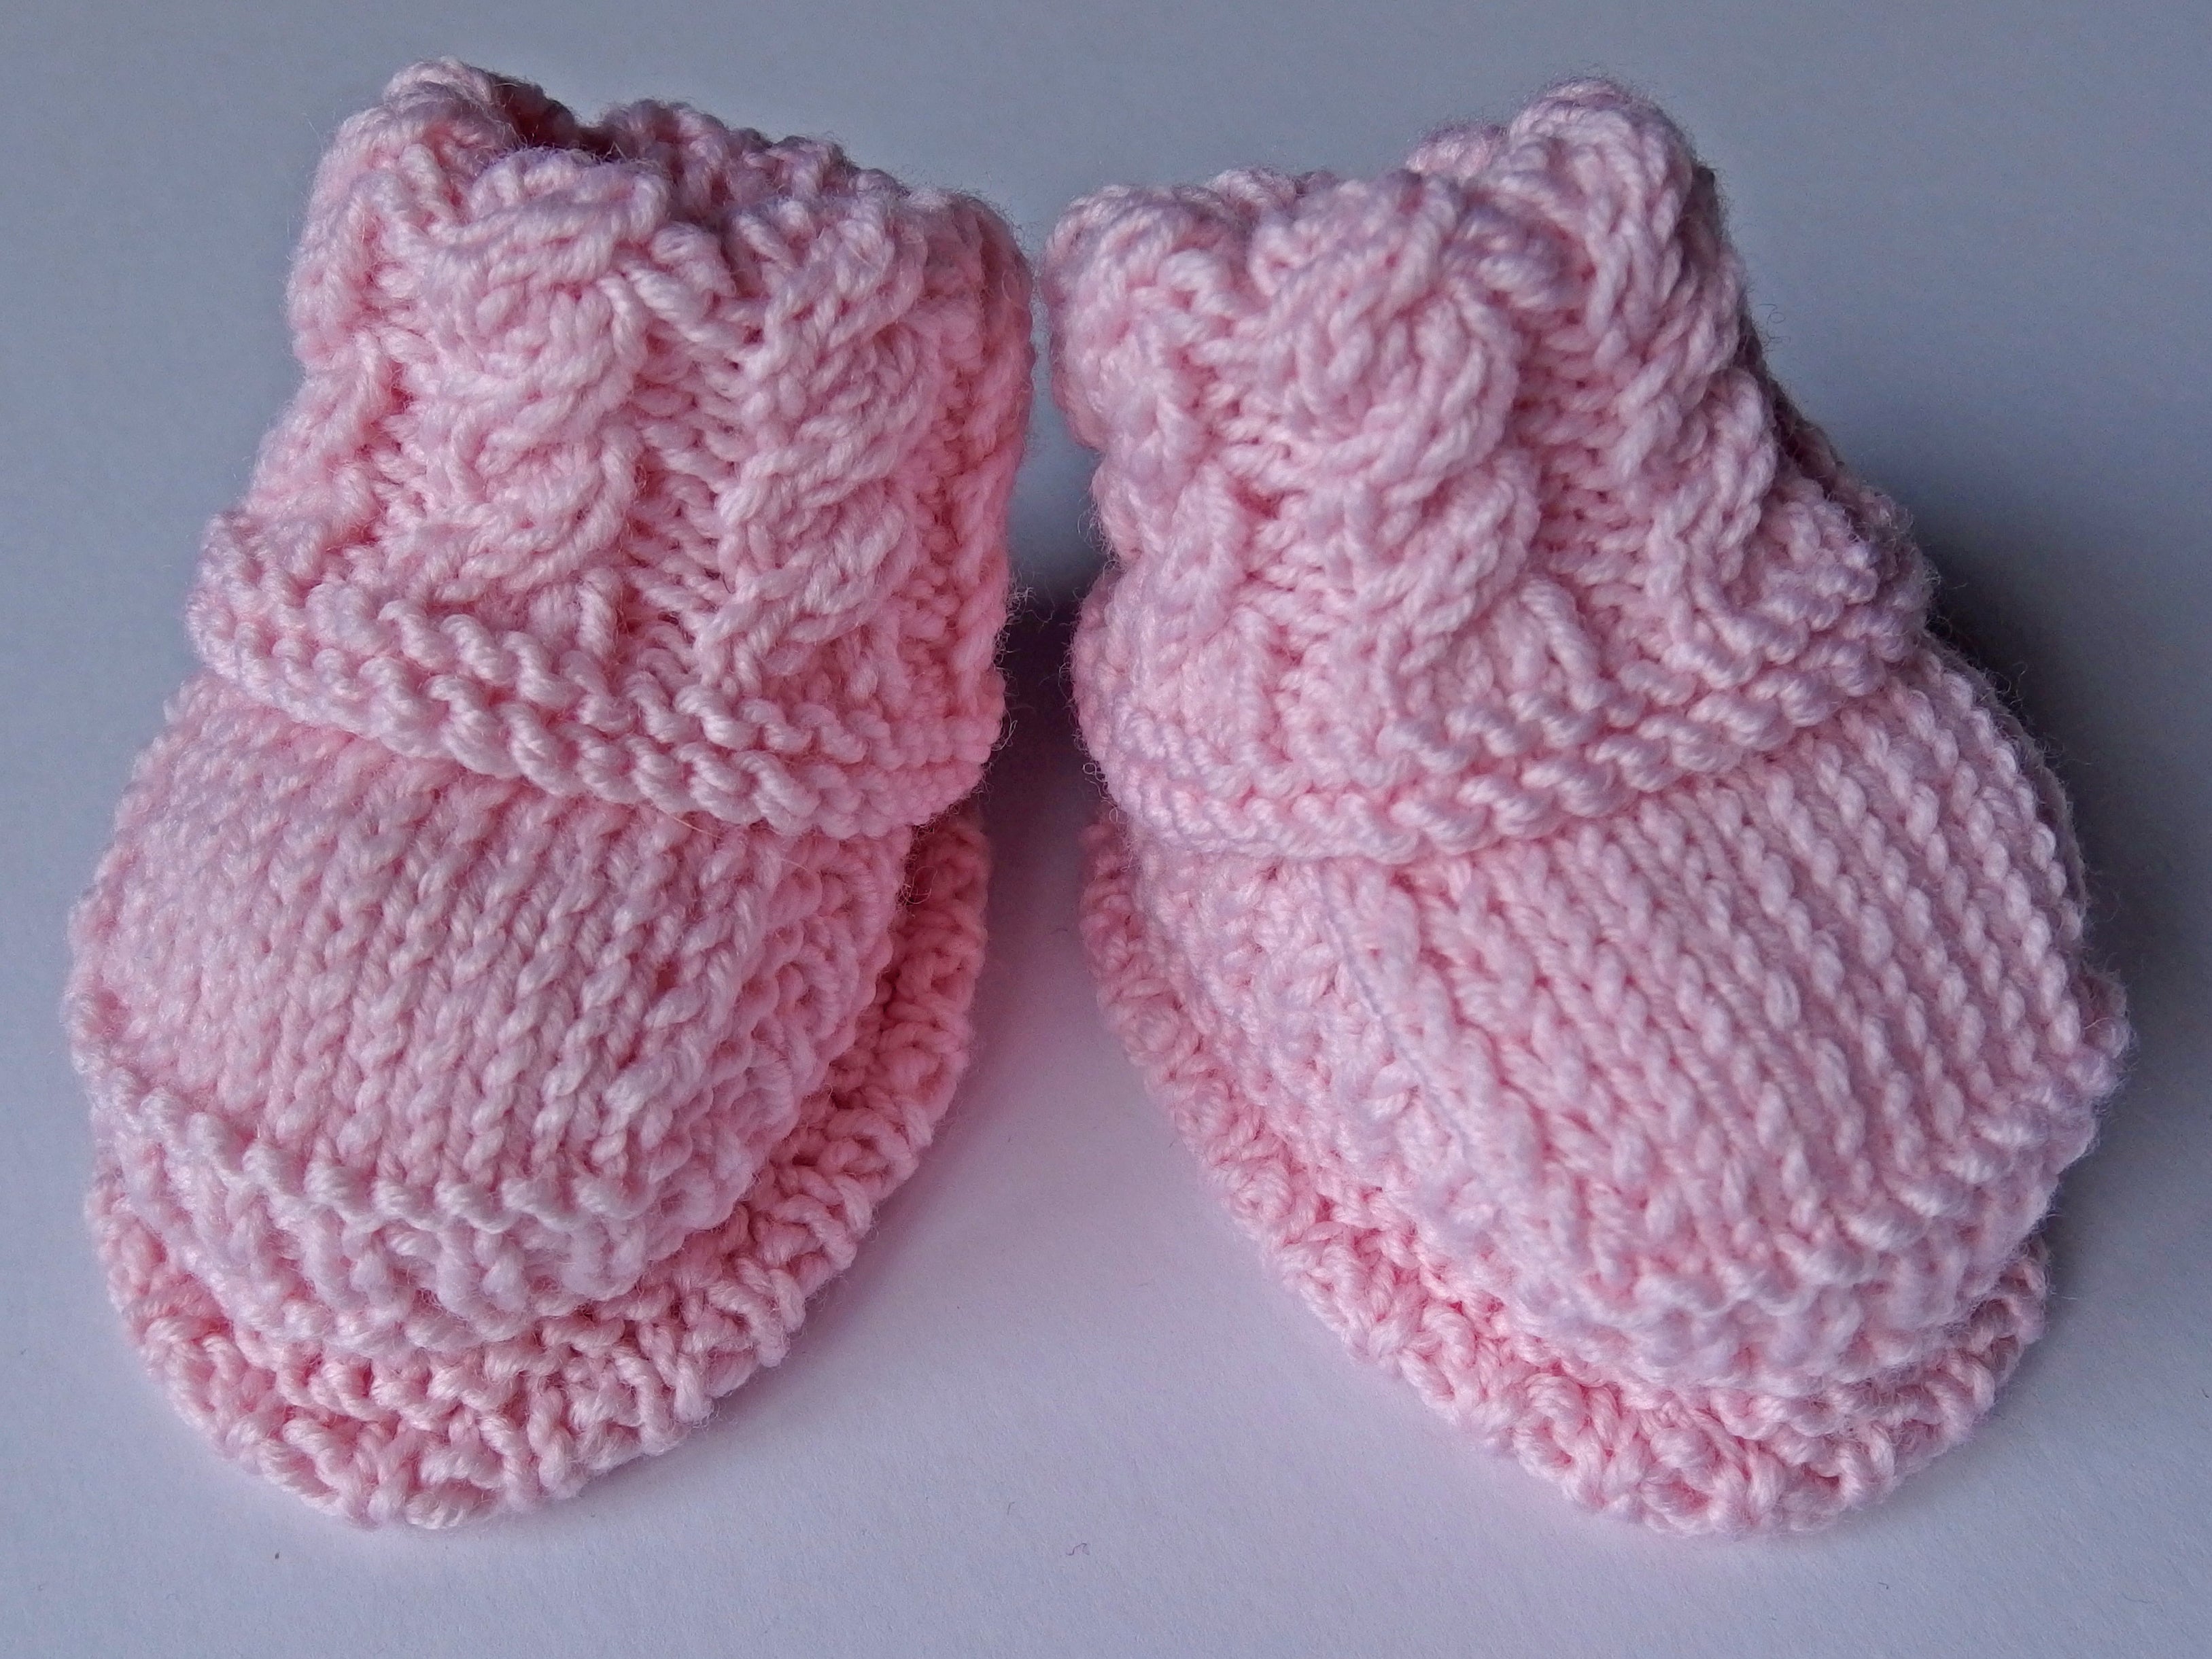 Baby Booties - made using 100% baby merino wool: pink